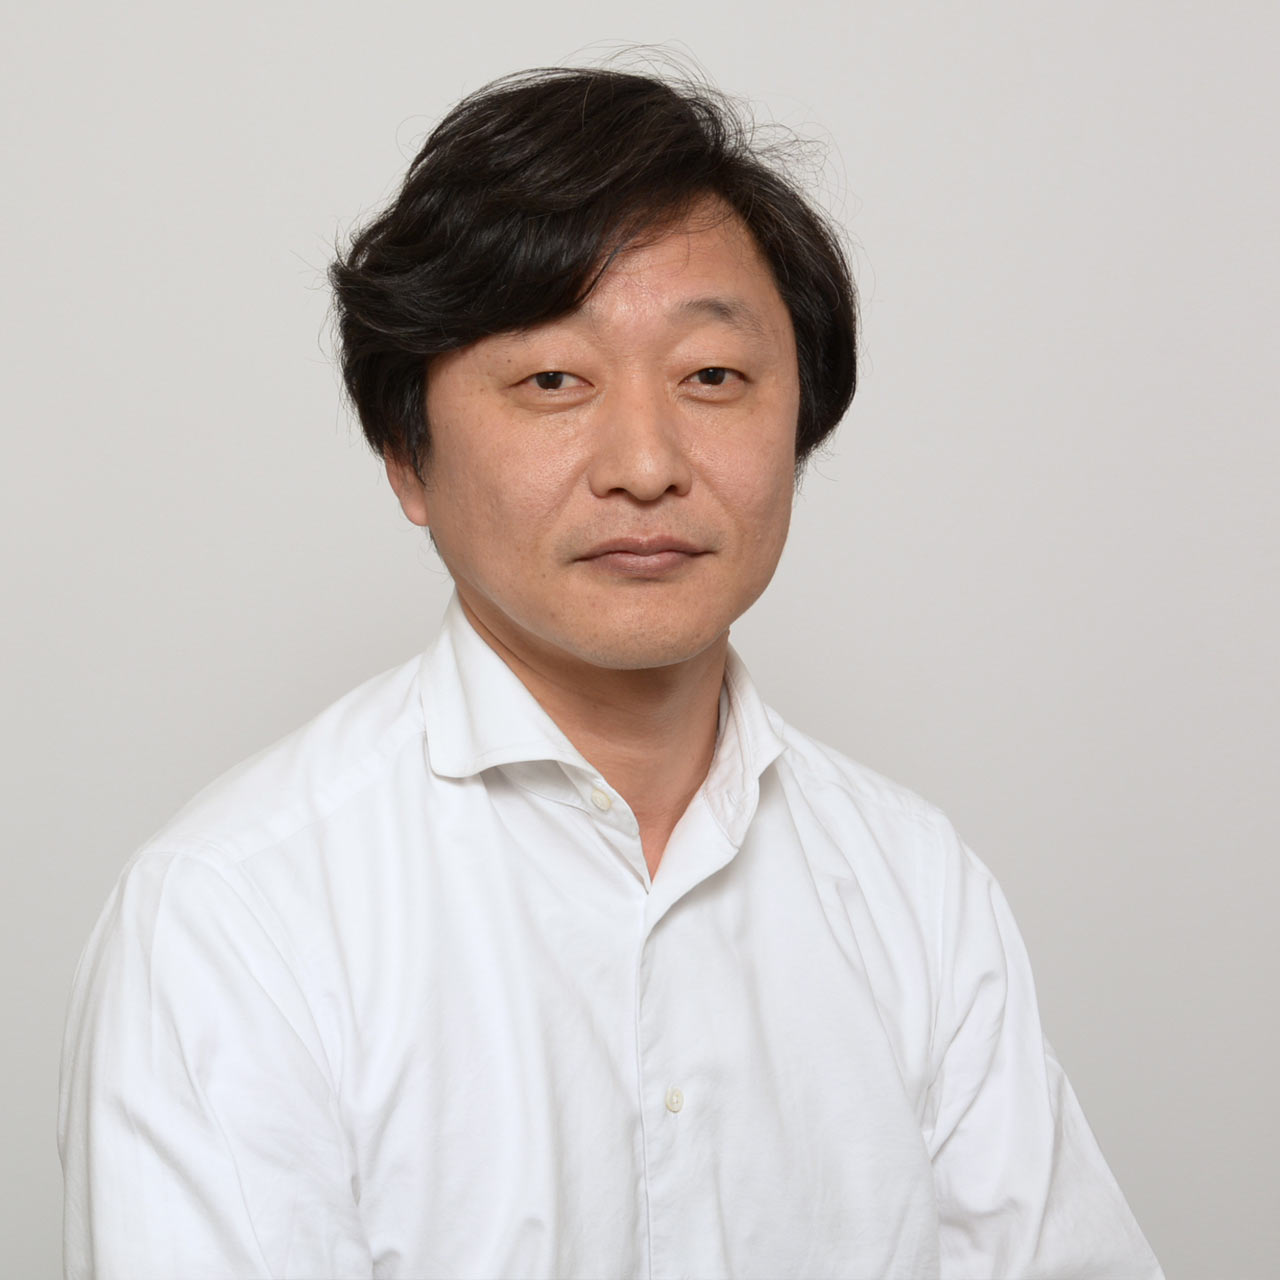 Taro Nakamoto